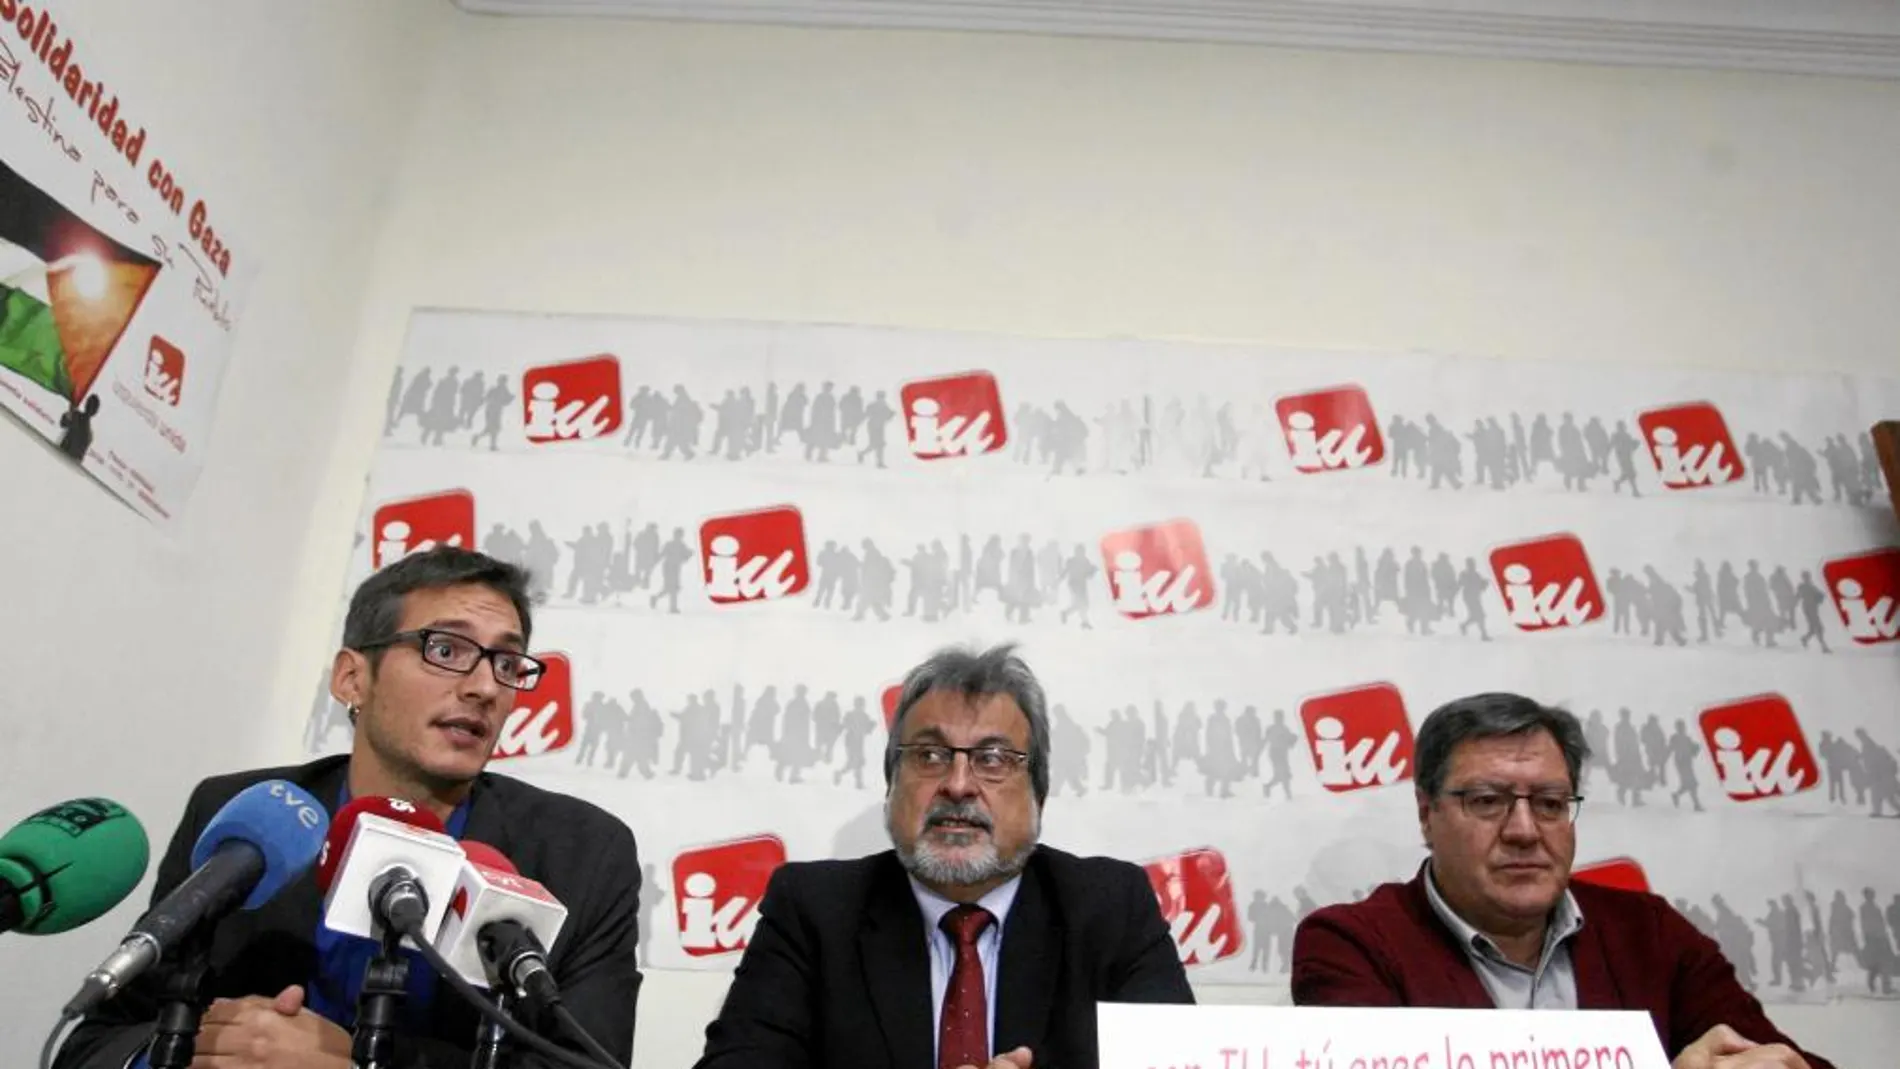 José María González (IU), el abogado de IU, Gorka Esparza y el representante ecologista Javier Gutiérrez